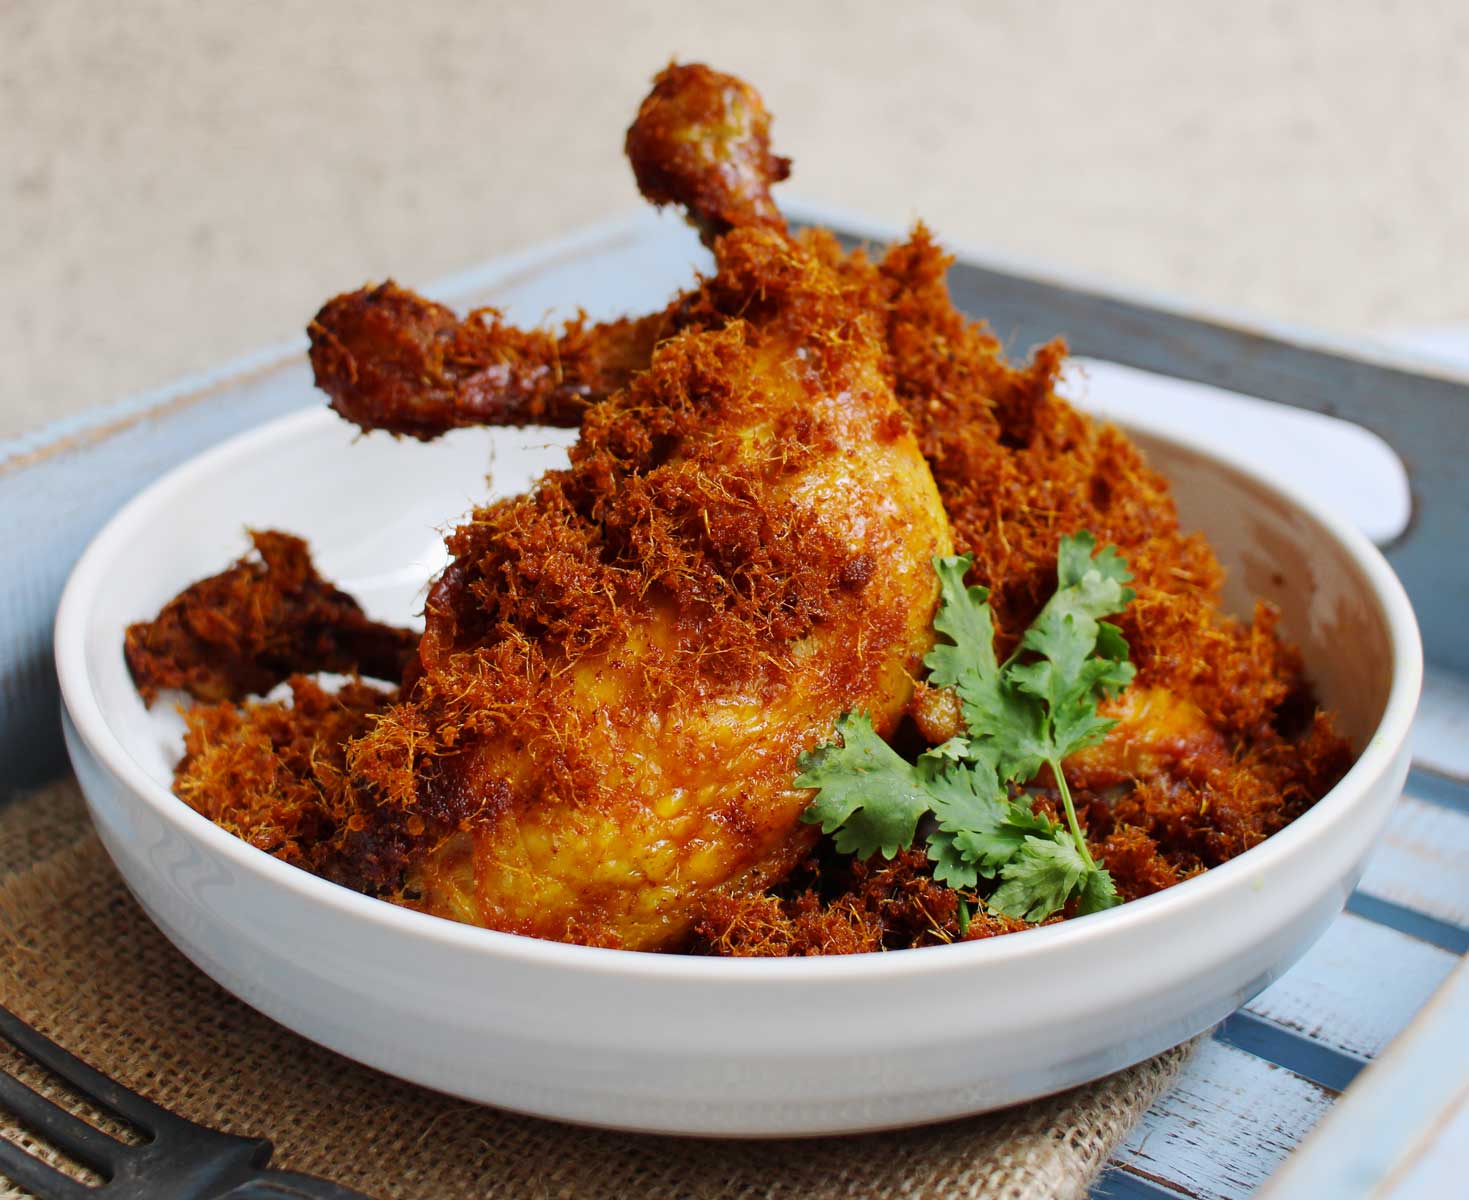 Ayam Goreng Lengkuas: Galangal Fried Chicken